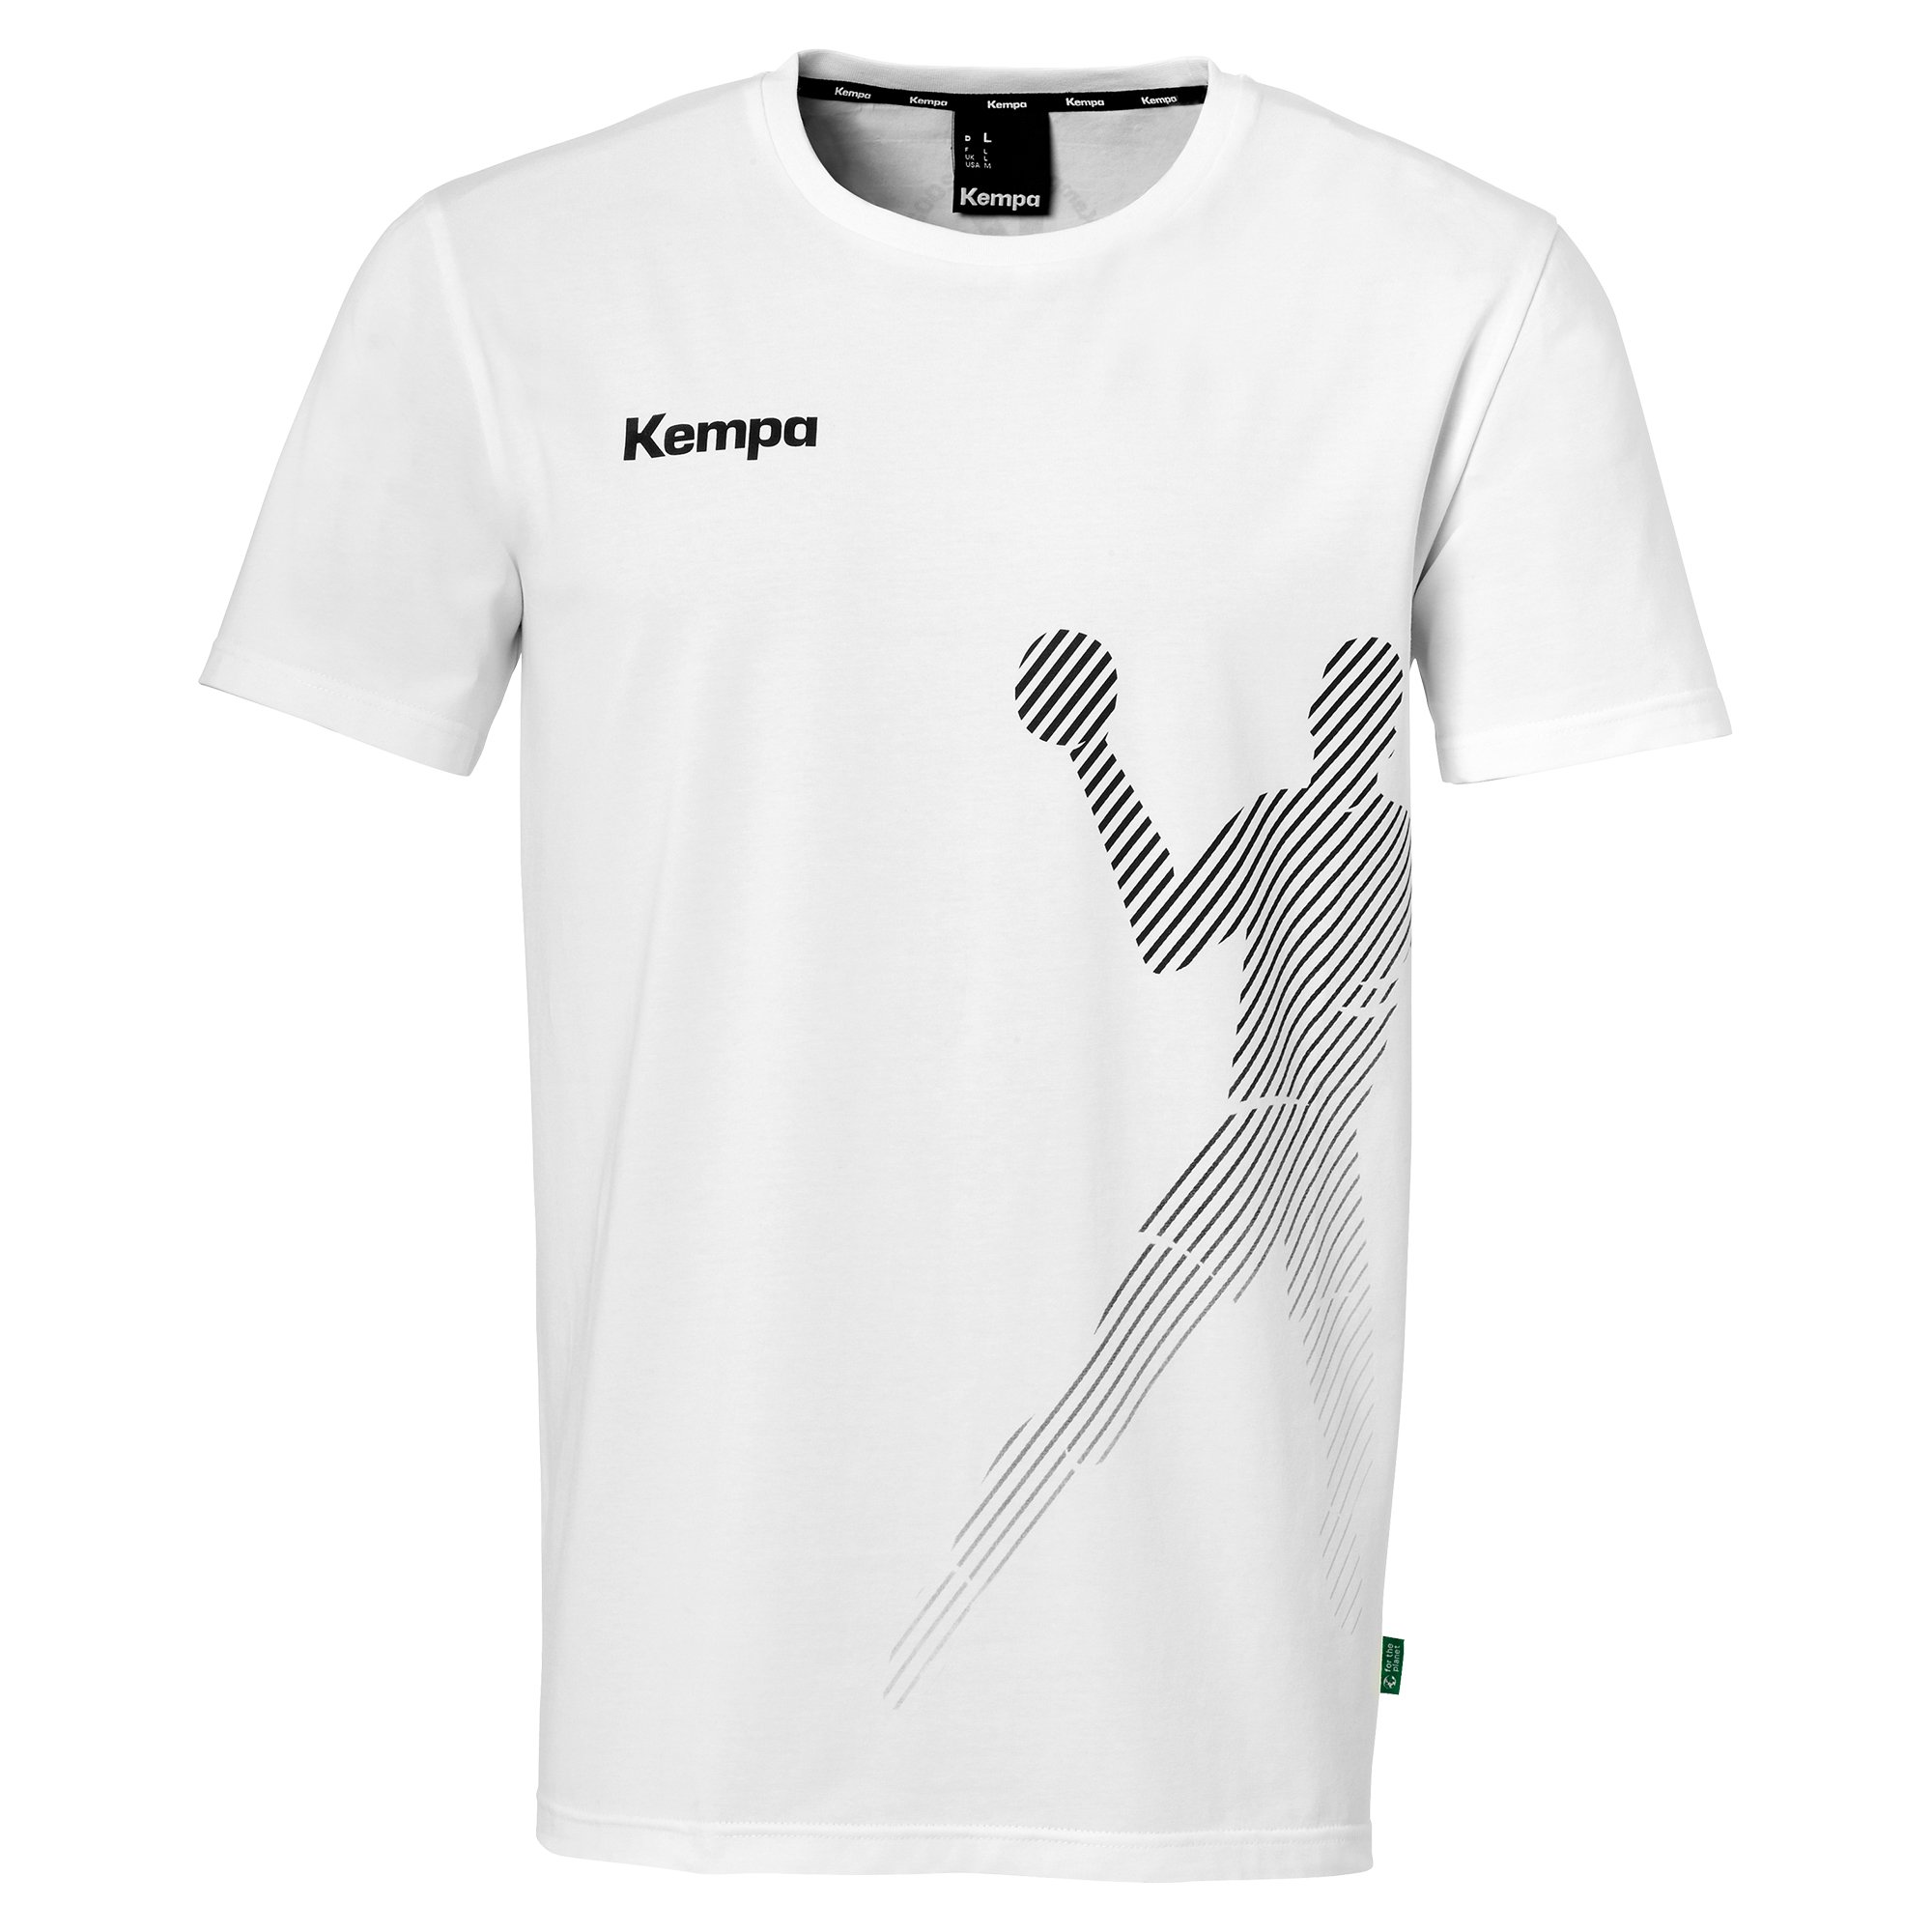 Kempa T-Shirt Black & White